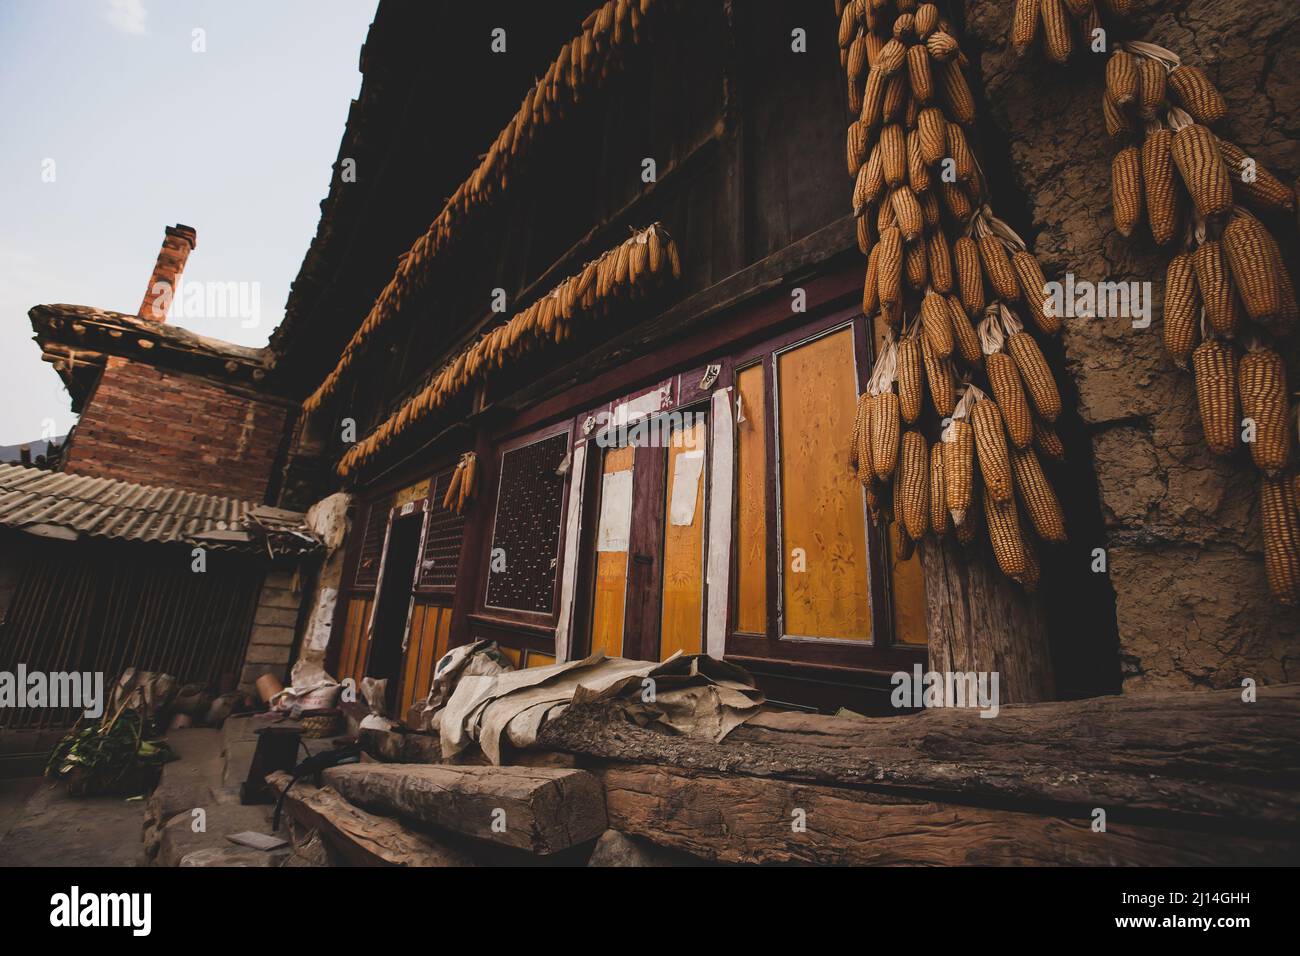 Les anciens extérieurs de maisons traditionnelles chinoises de terre ou de maisons de rafle, corncobs pendent sur les piliers en bois et sur le linteau. Yunnan, Chine. Banque D'Images